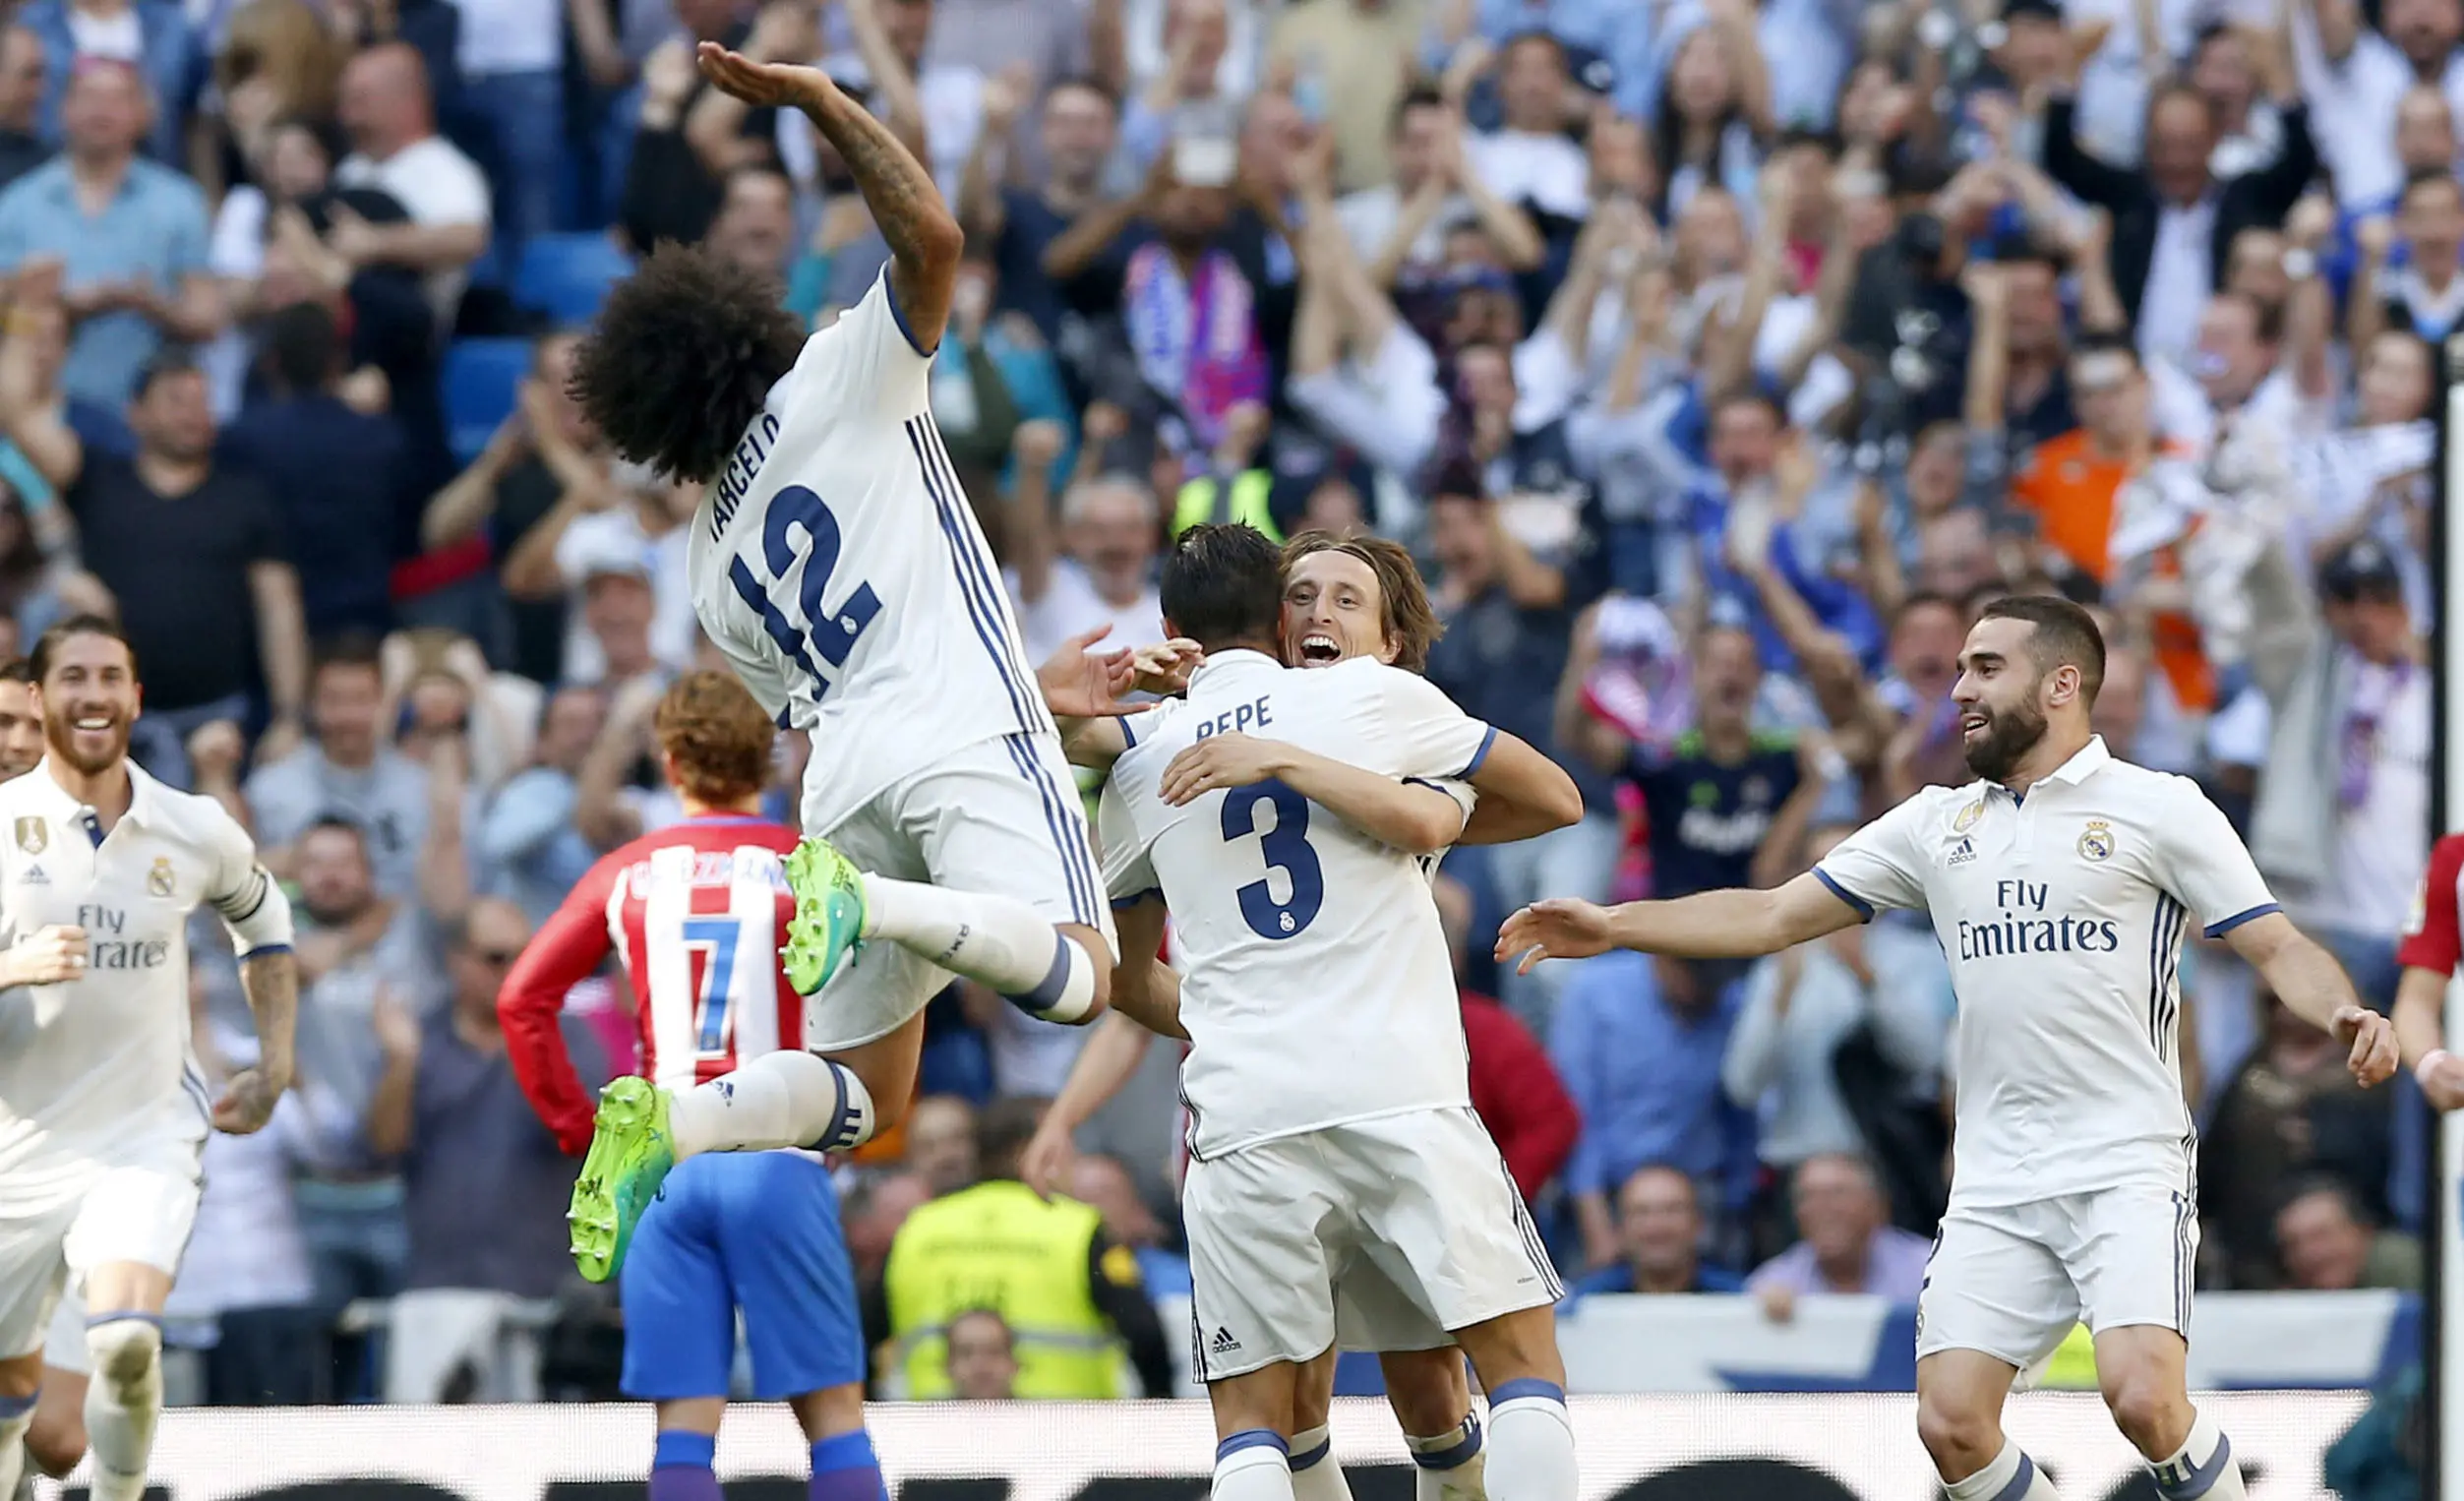 Para pemain Real Madrid merayakan gol Pepe saat menjamu Atletico Madrid pada laga La Liga di Santiago Bernabeu stadium, Madrid, (8/4/2017). Real Madrid bermain Imbang 1-1 dengan Atletico. (AP/Daniel Ochoa de Olza)